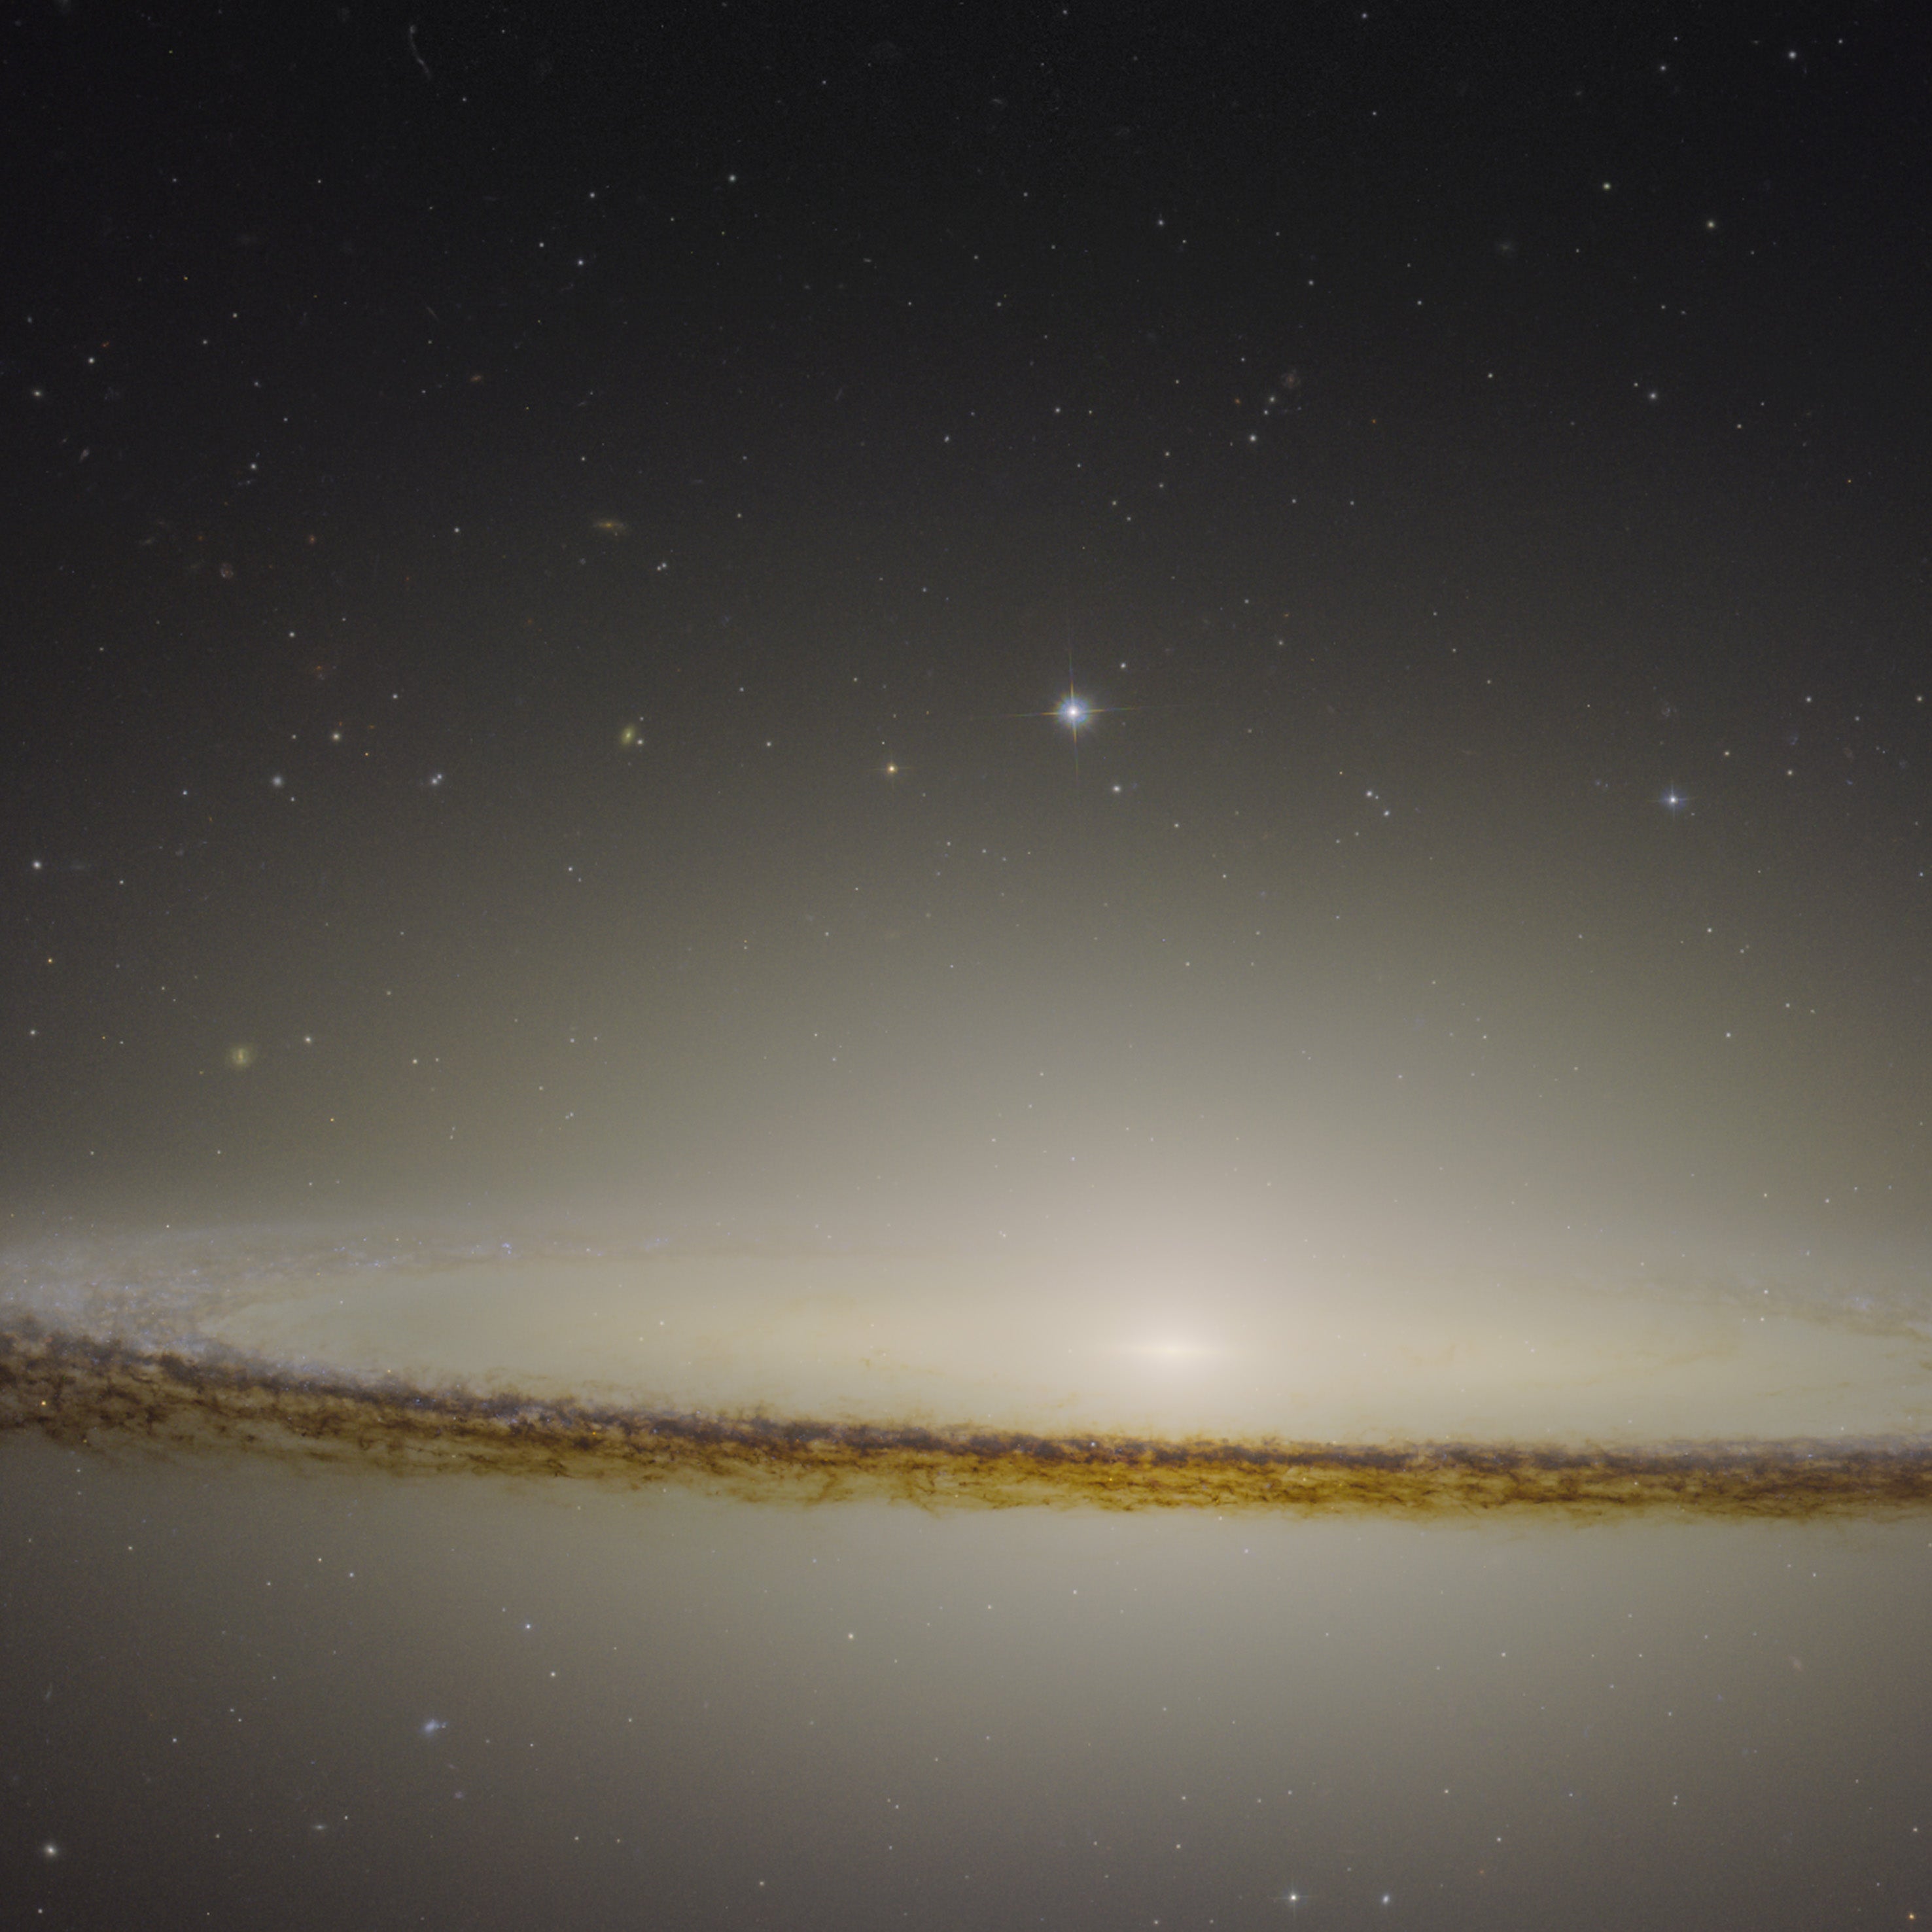 Messier 104 Sombrero Galaxy